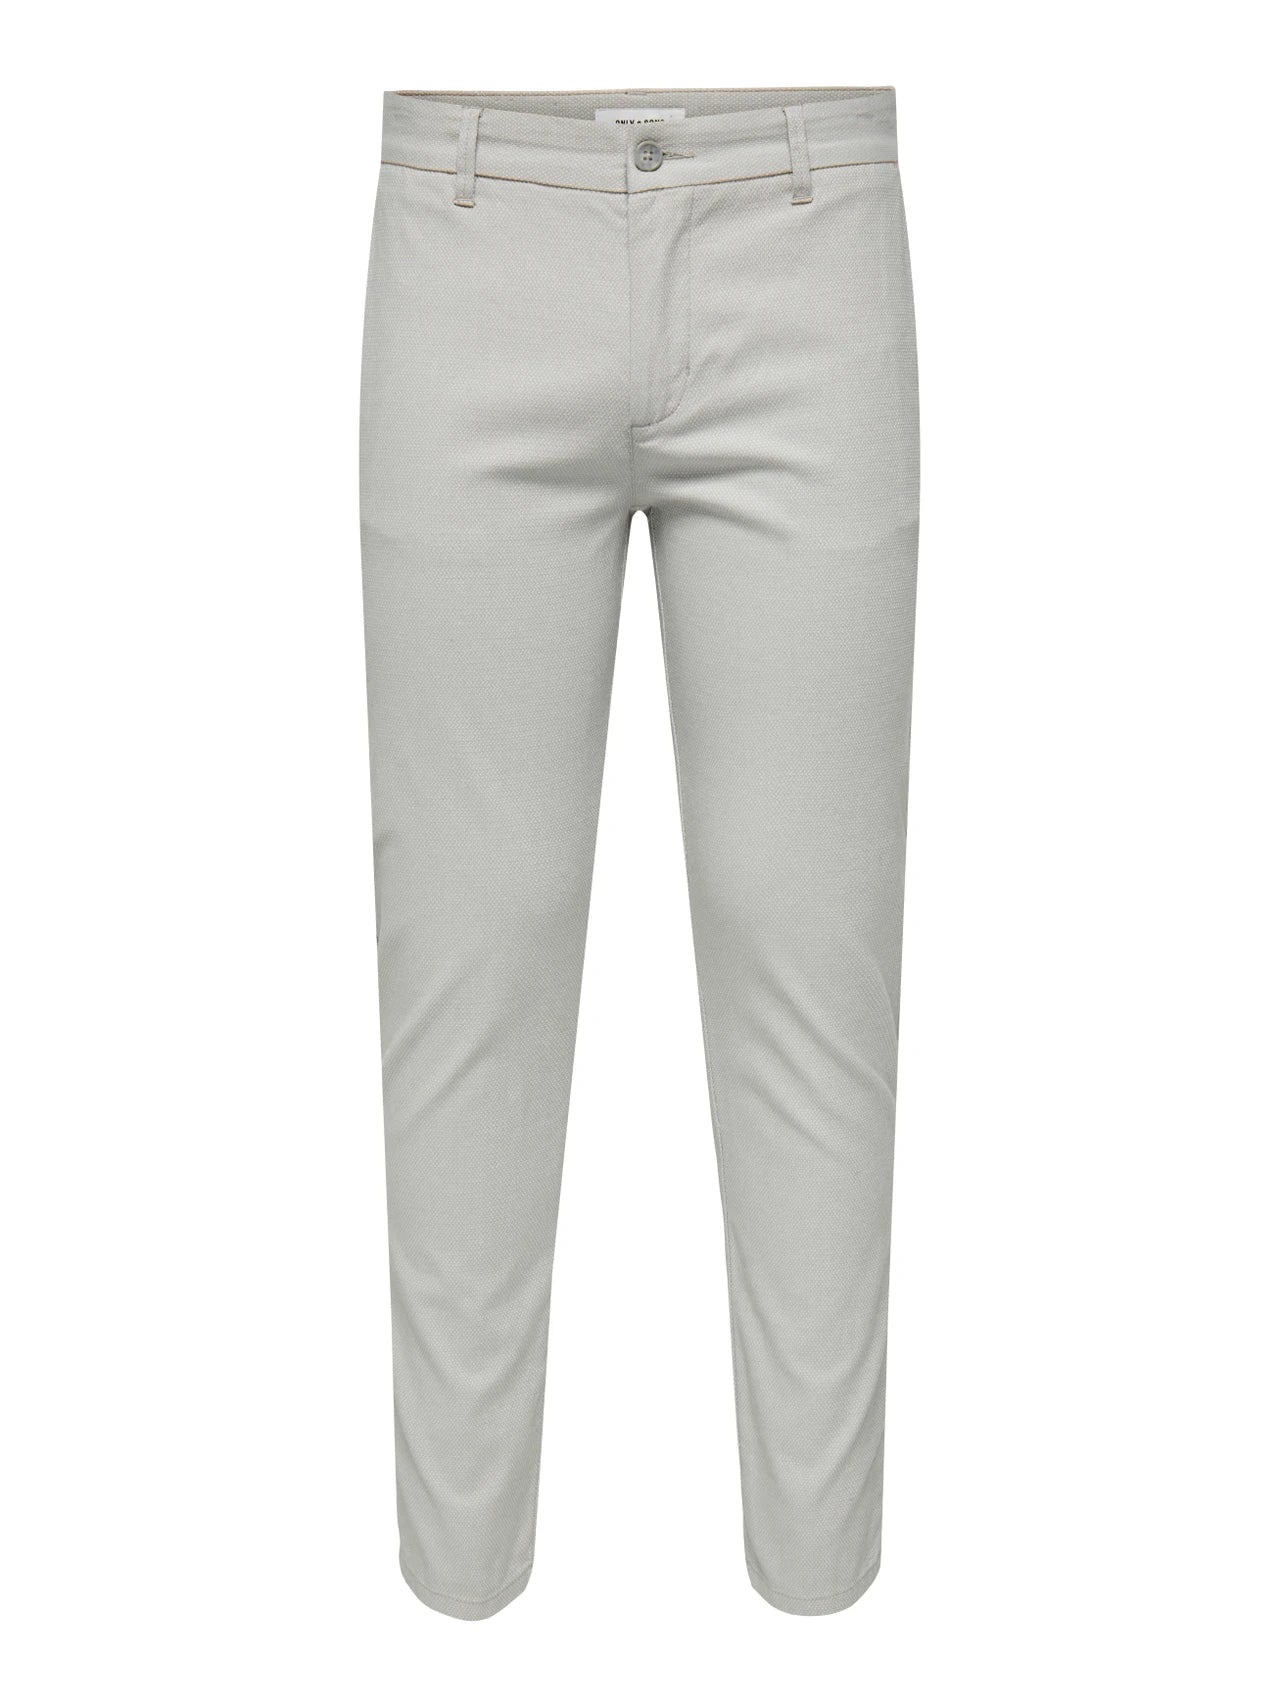 Pantalon chinos gris pâle